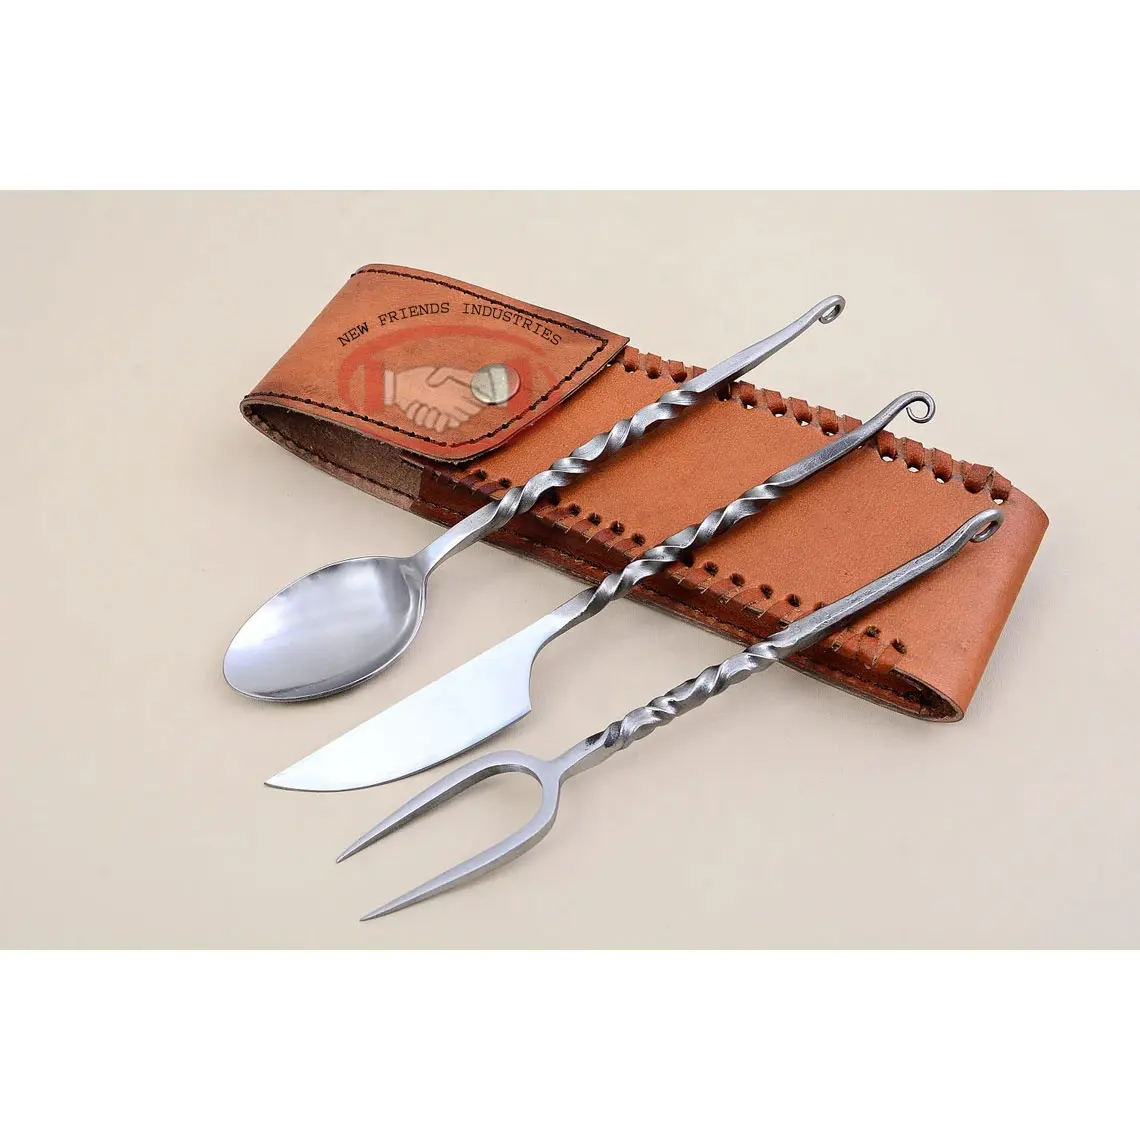 مجموعة أدوات المائدة المصنوعة من الفولاذ المُسامِع يدويًا المزخرفة بمرآة، منتجات المائدة المصنوعة يدويًا، مجموعات أدوات المائدة المدورة المكونة من 3 قطع